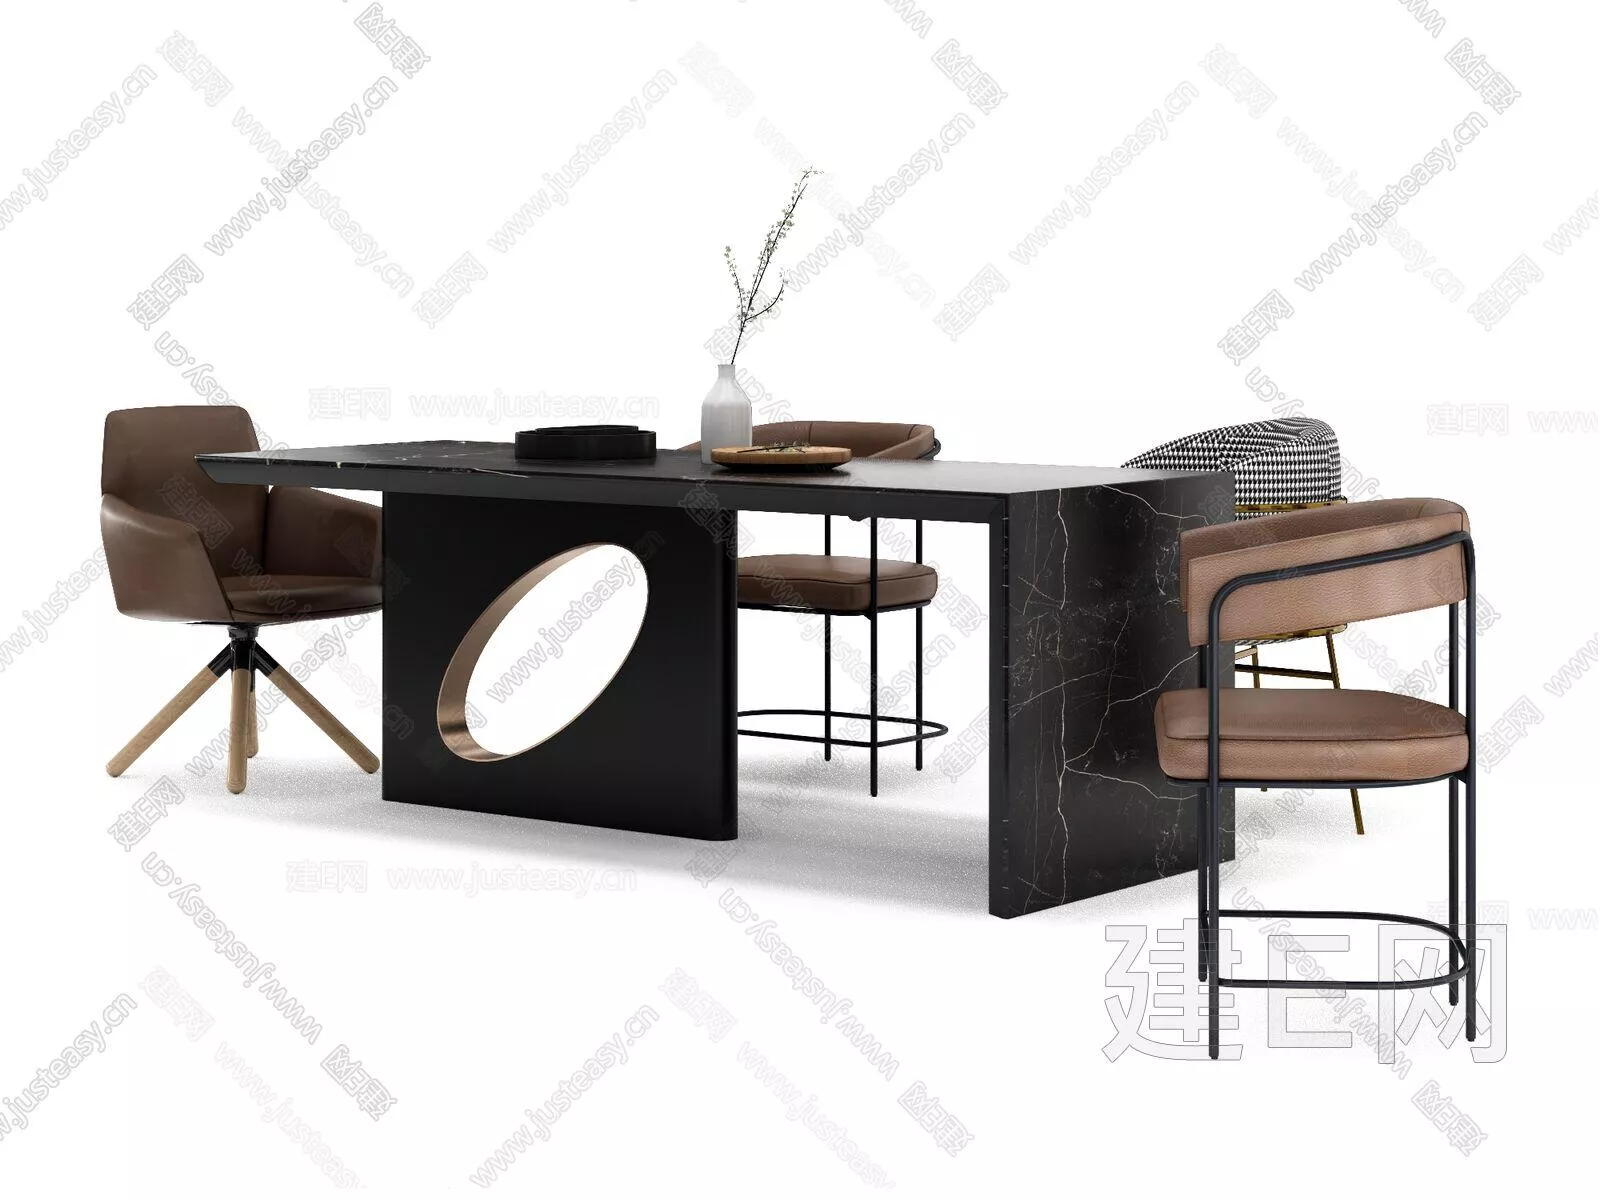 MODERN DINING TABLE SET - SKETCHUP 3D MODEL - ENSCAPE - 115230158